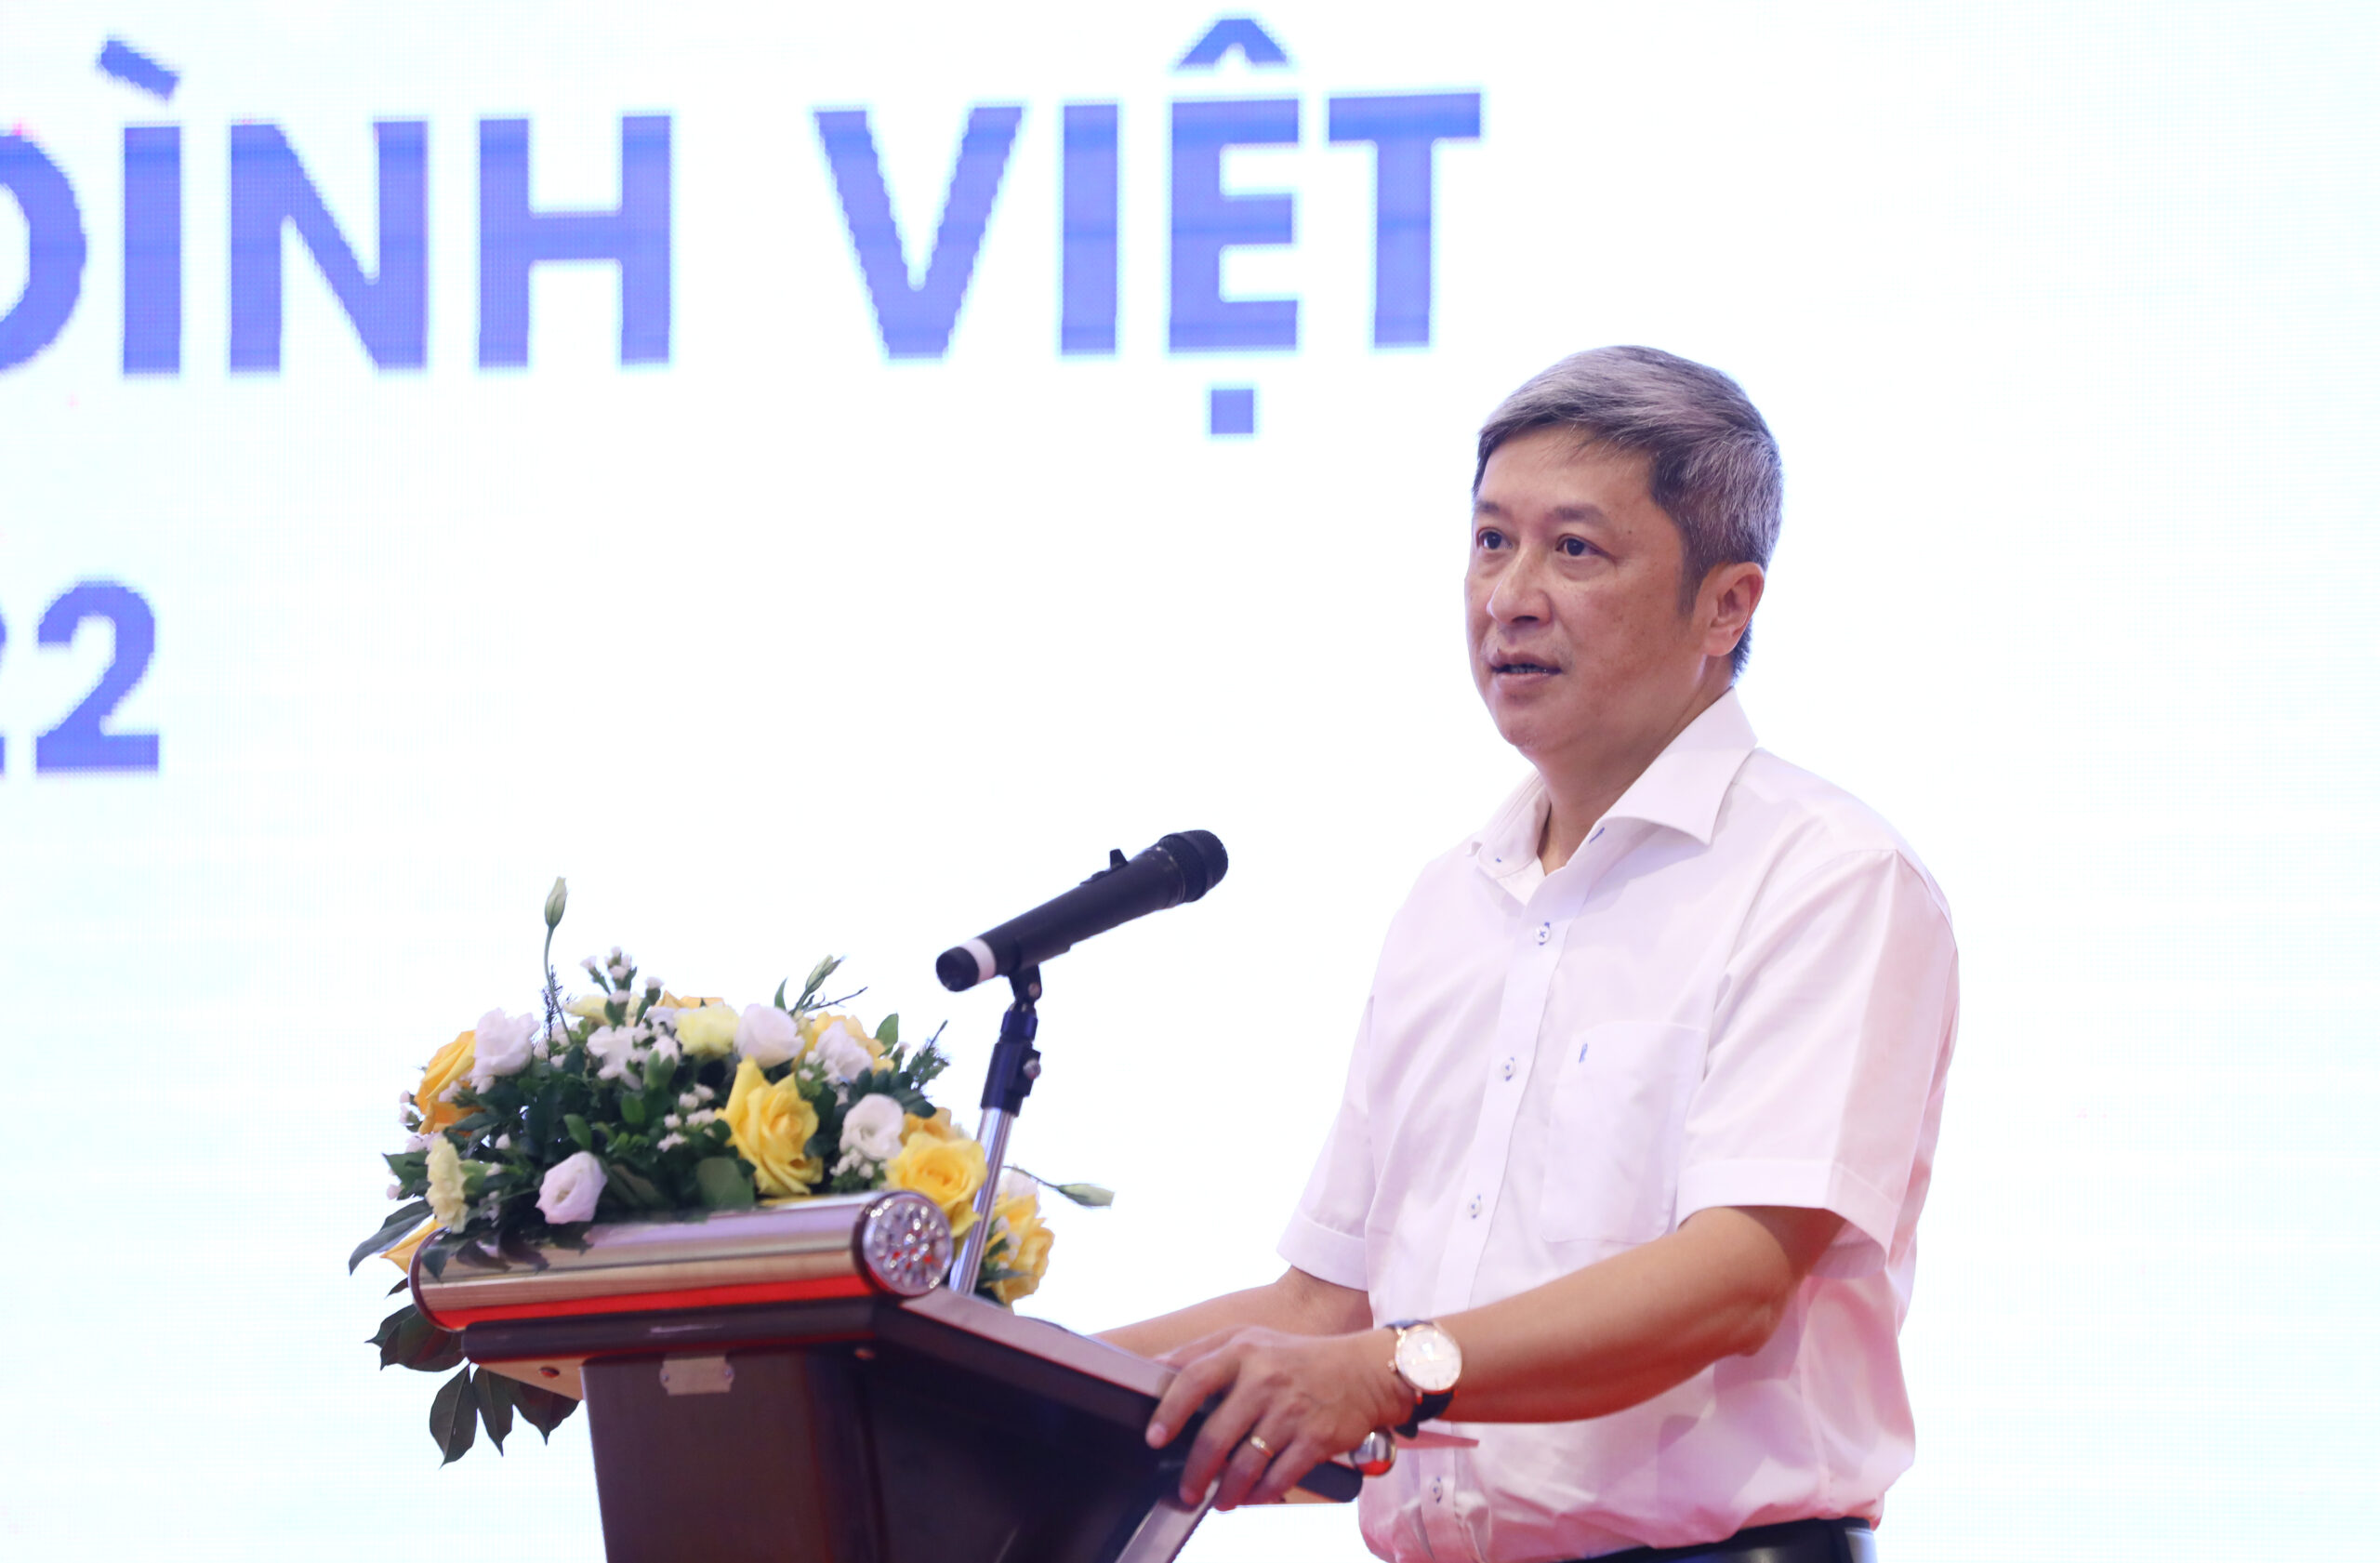 PGS. TS Nguyễn Trường Sơn, Thứ trưởng Bộ Y tế tham dự và phát biểu chỉ đạo tại chương trình.